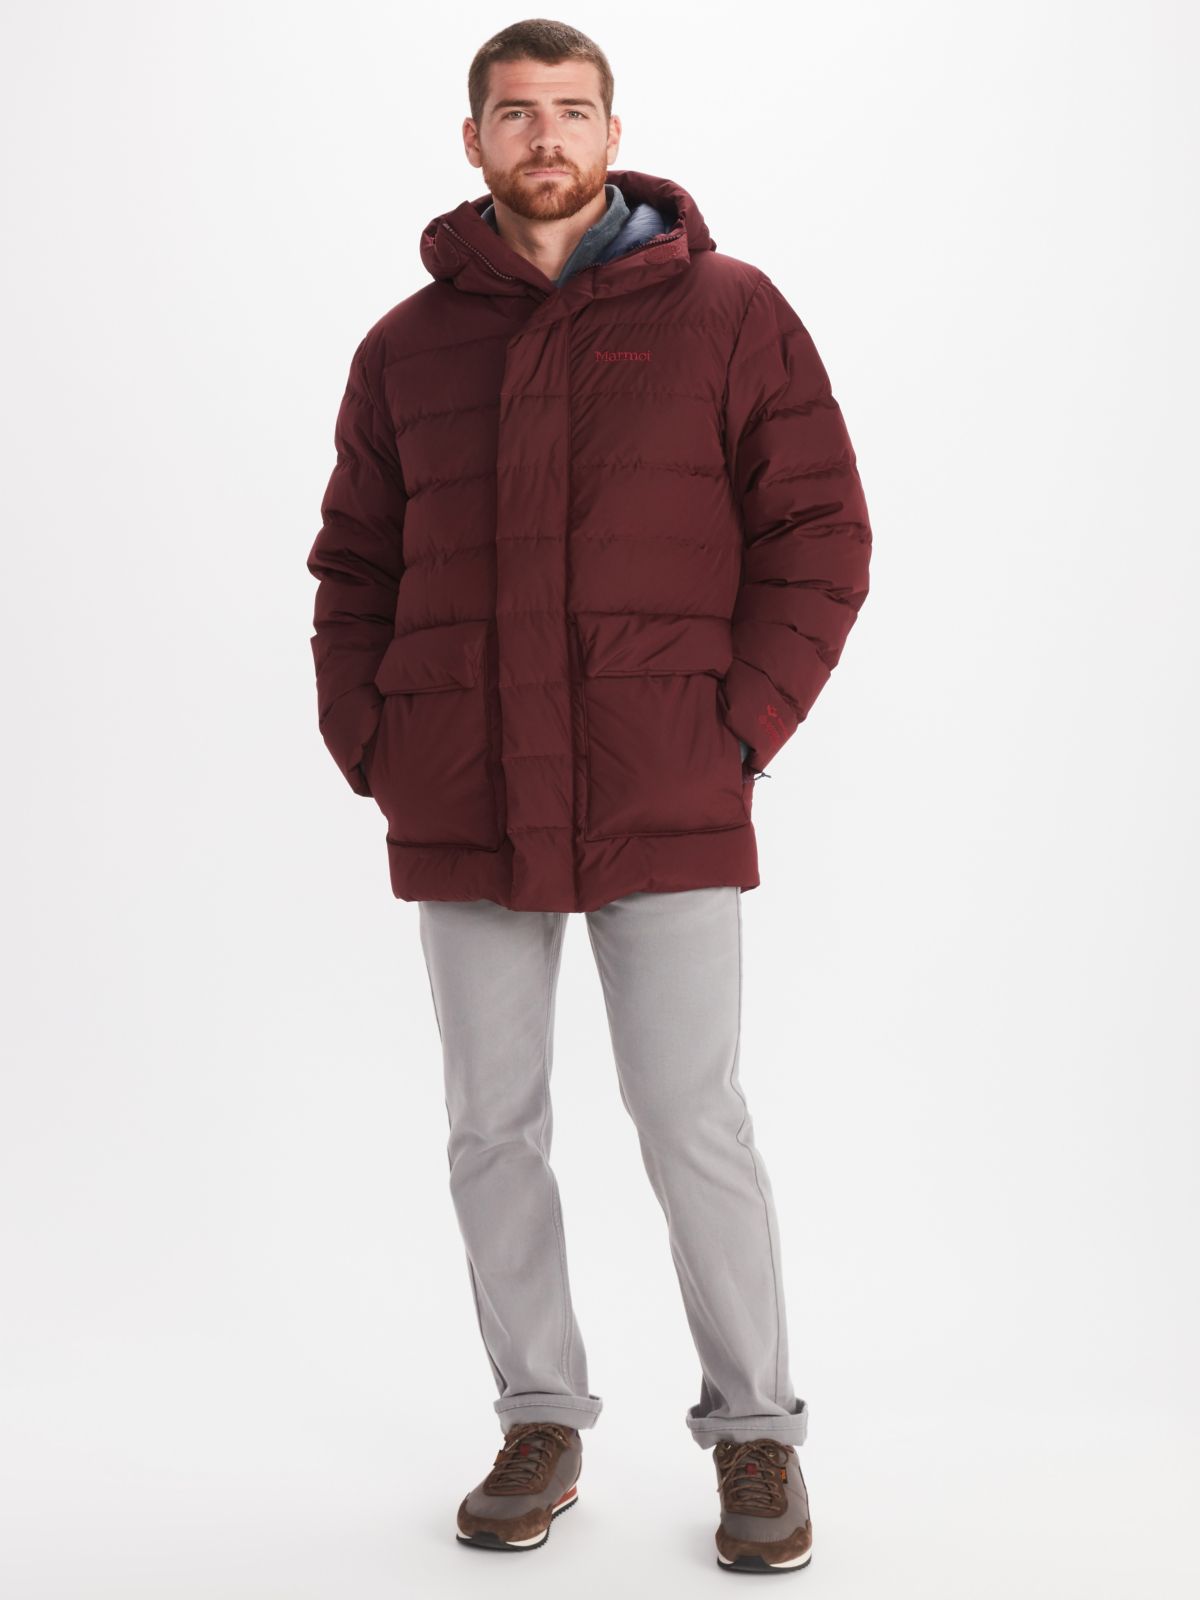 mens winter jacket worn by model